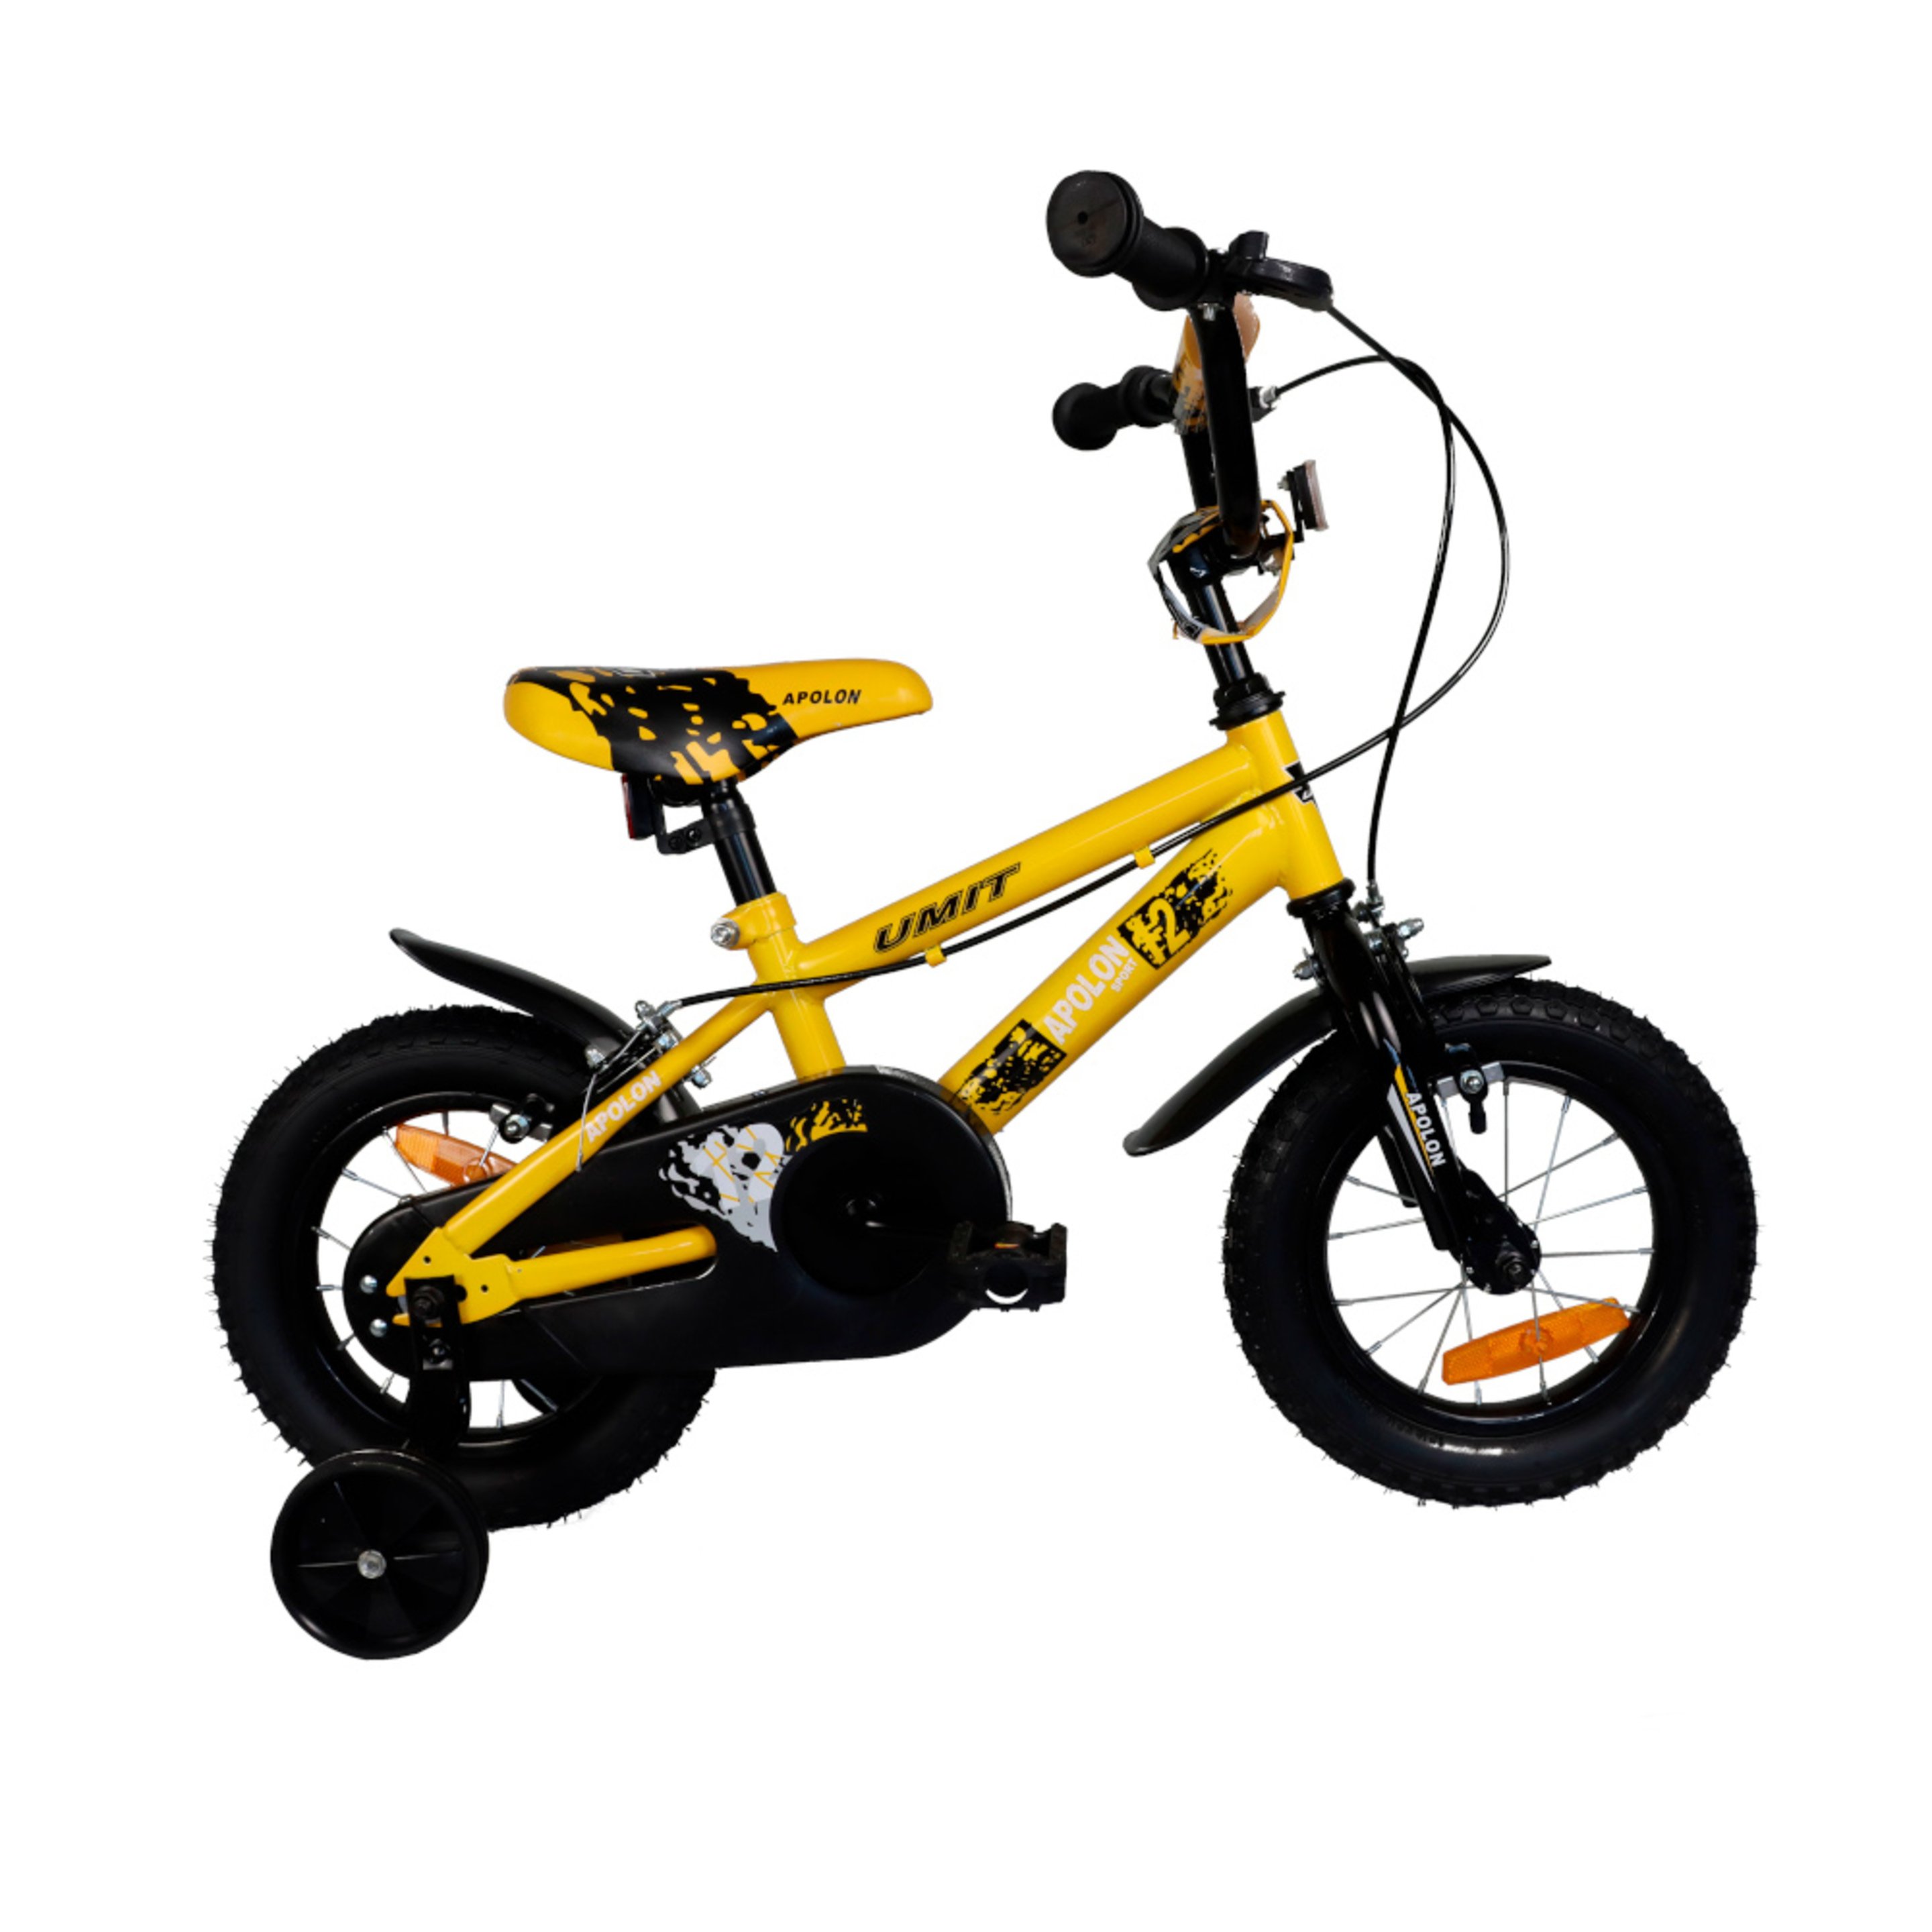 Apolon Yellow Kids Mountain Bike 12"